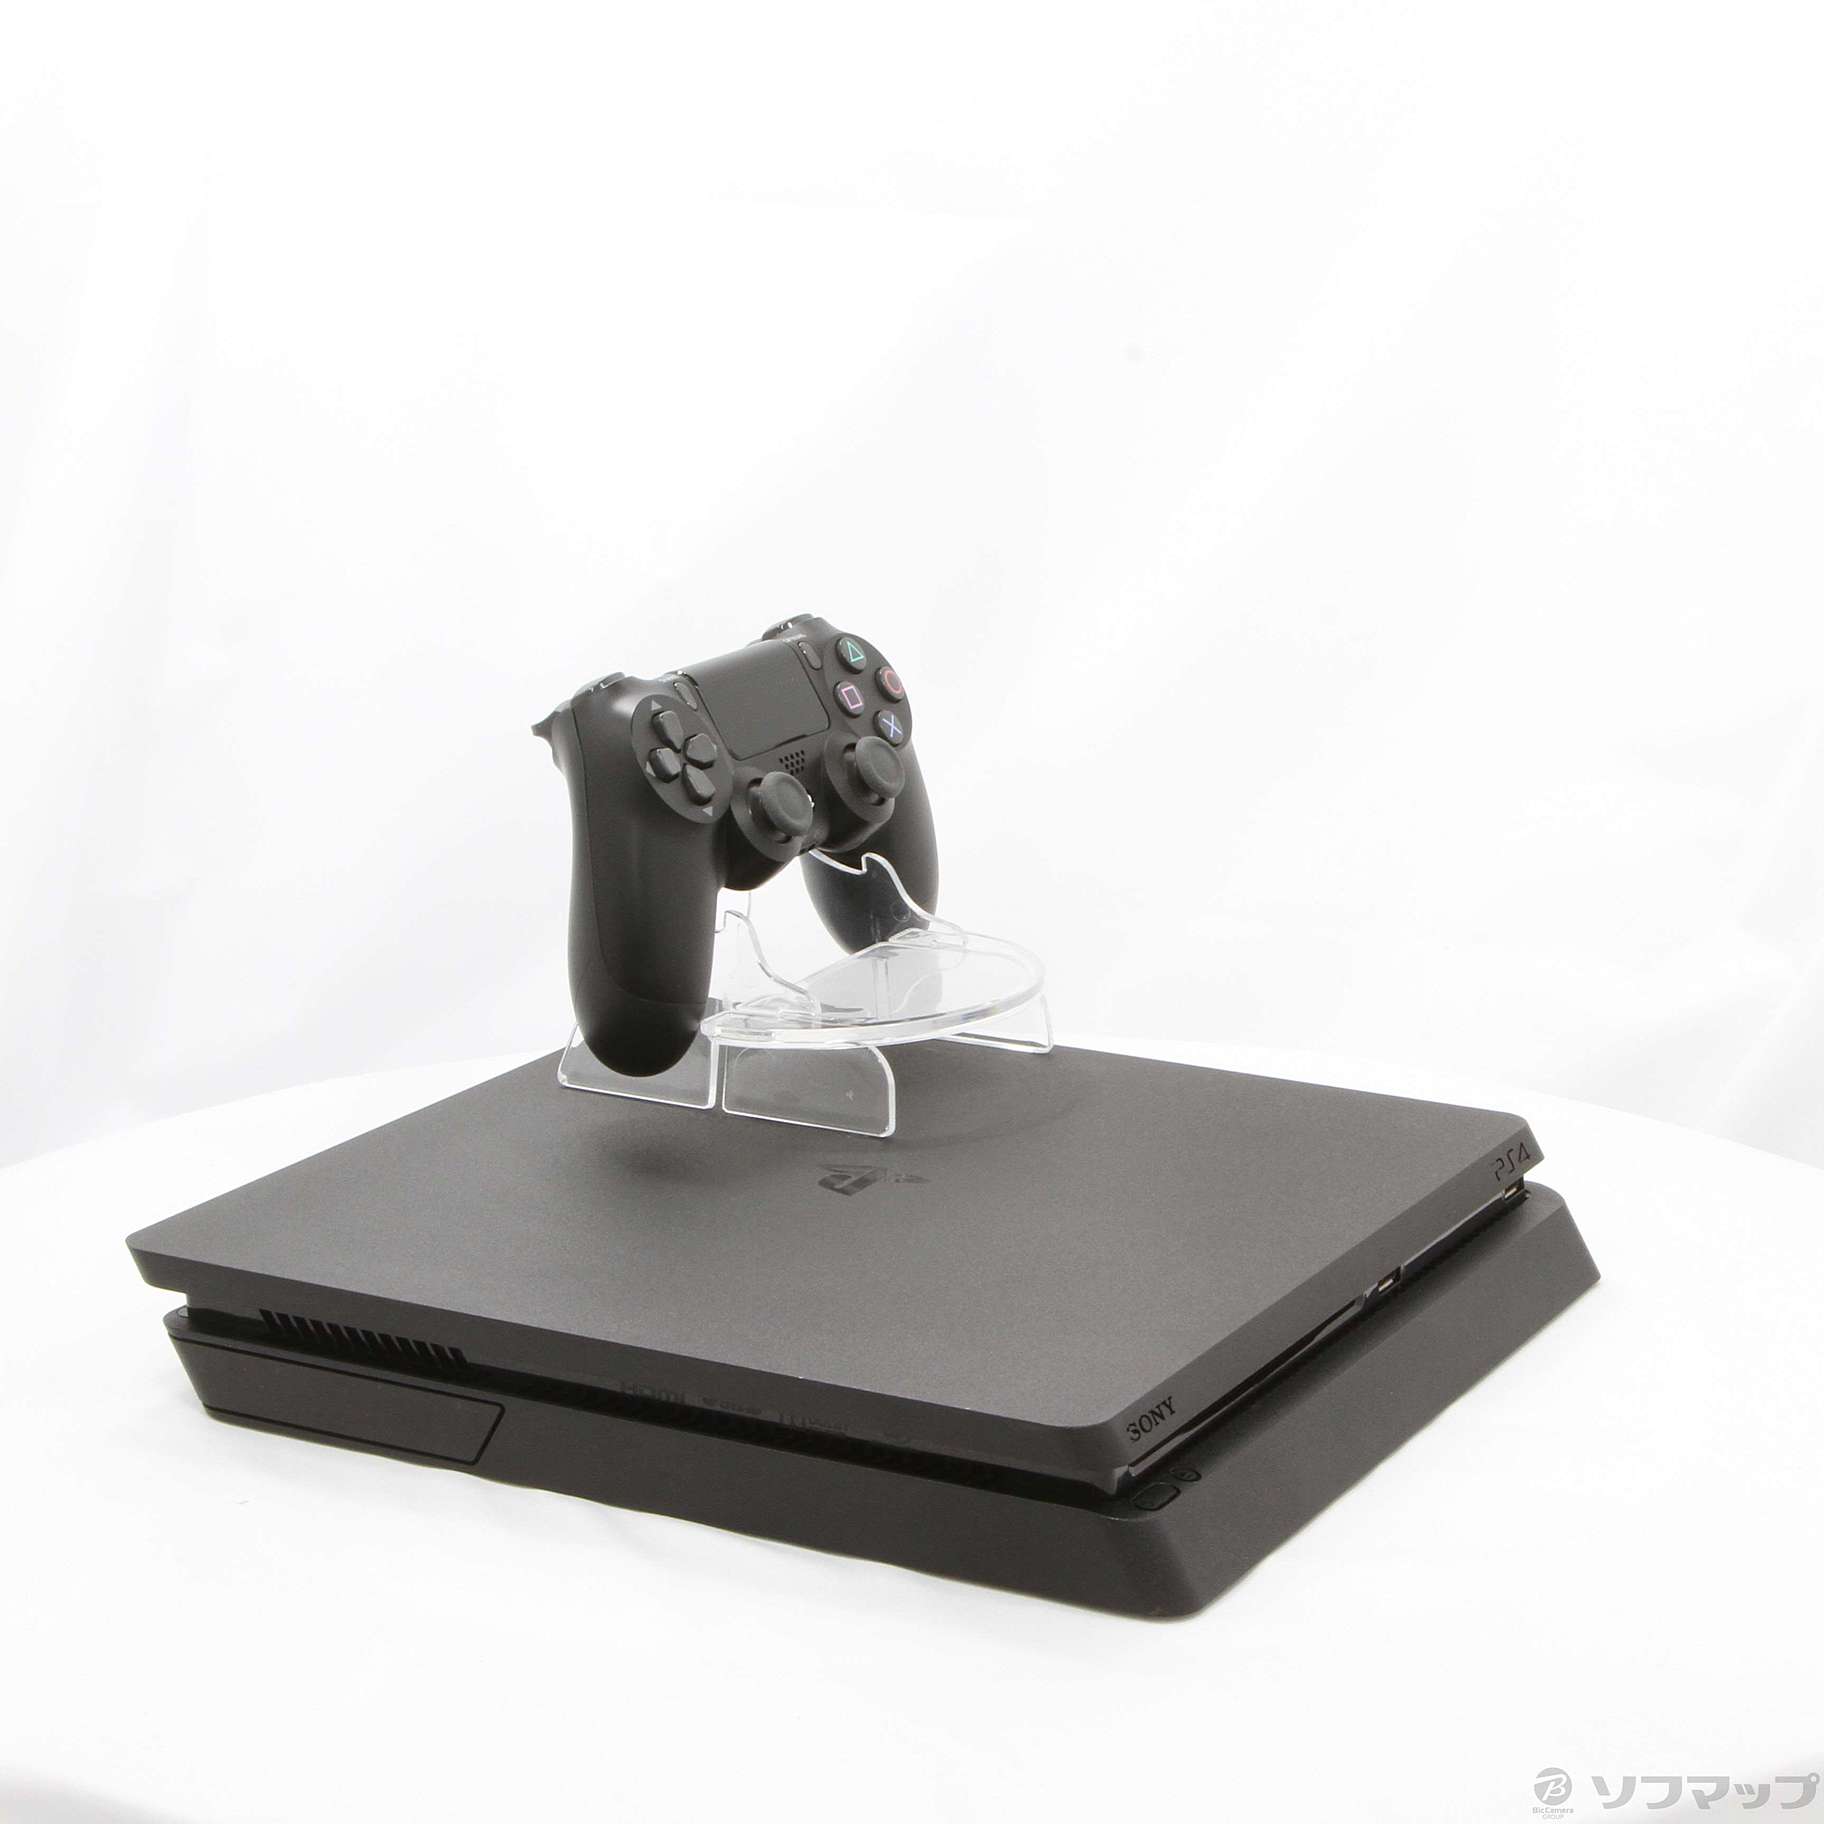 【中古】PlayStation 4 ジェット・ブラック 500GB CUH-2200AB01 02/28(月)値下げ